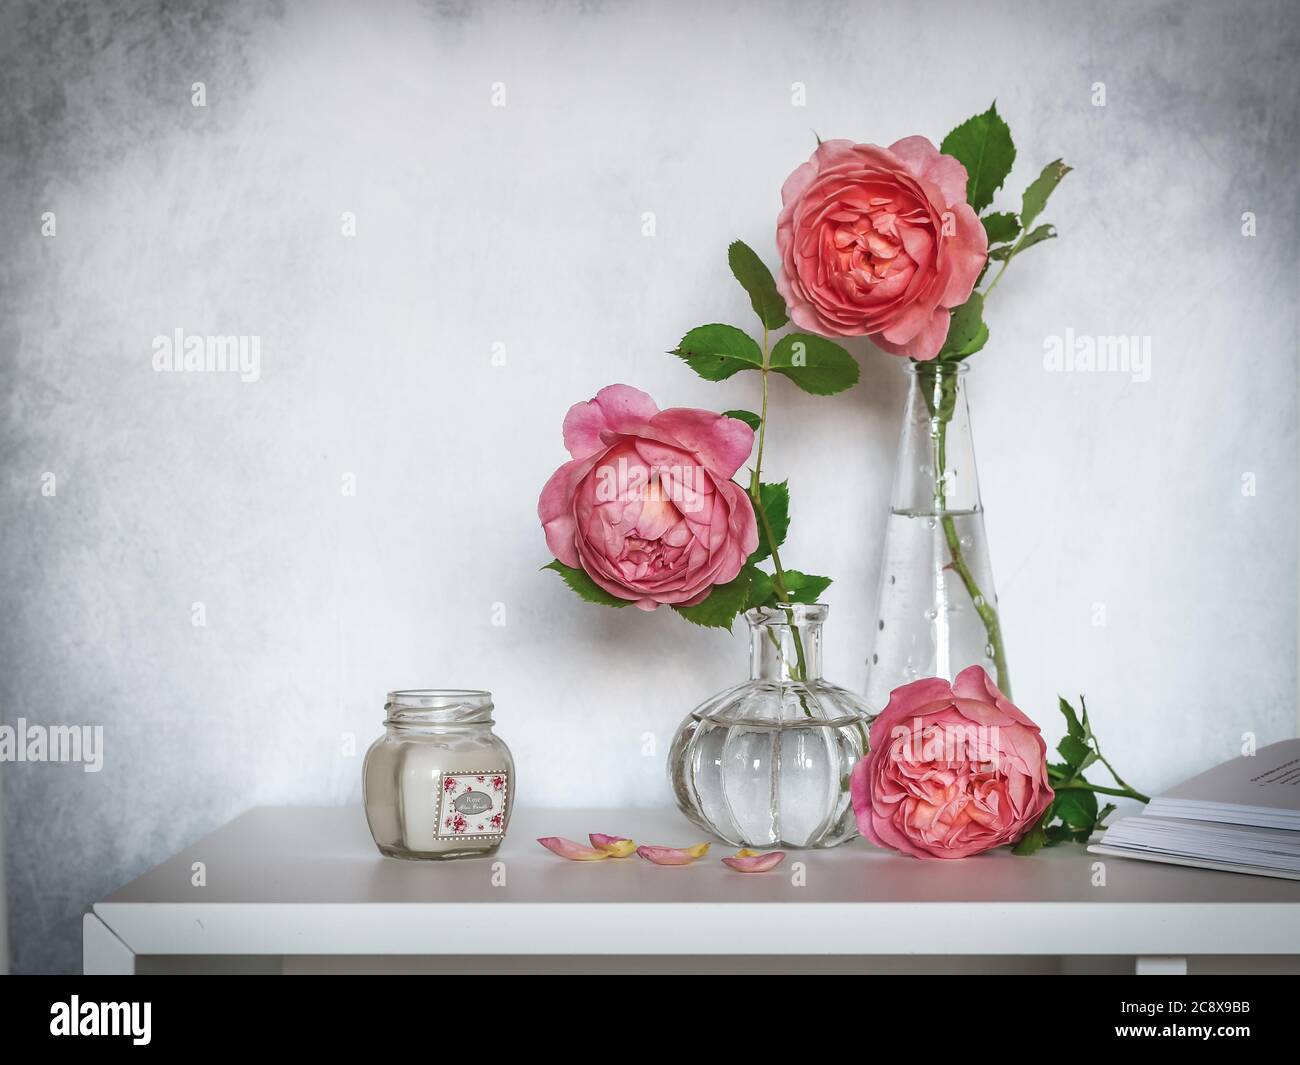 Roses roses dans de petits vases en verre et une bougie sur une étagère Banque D'Images